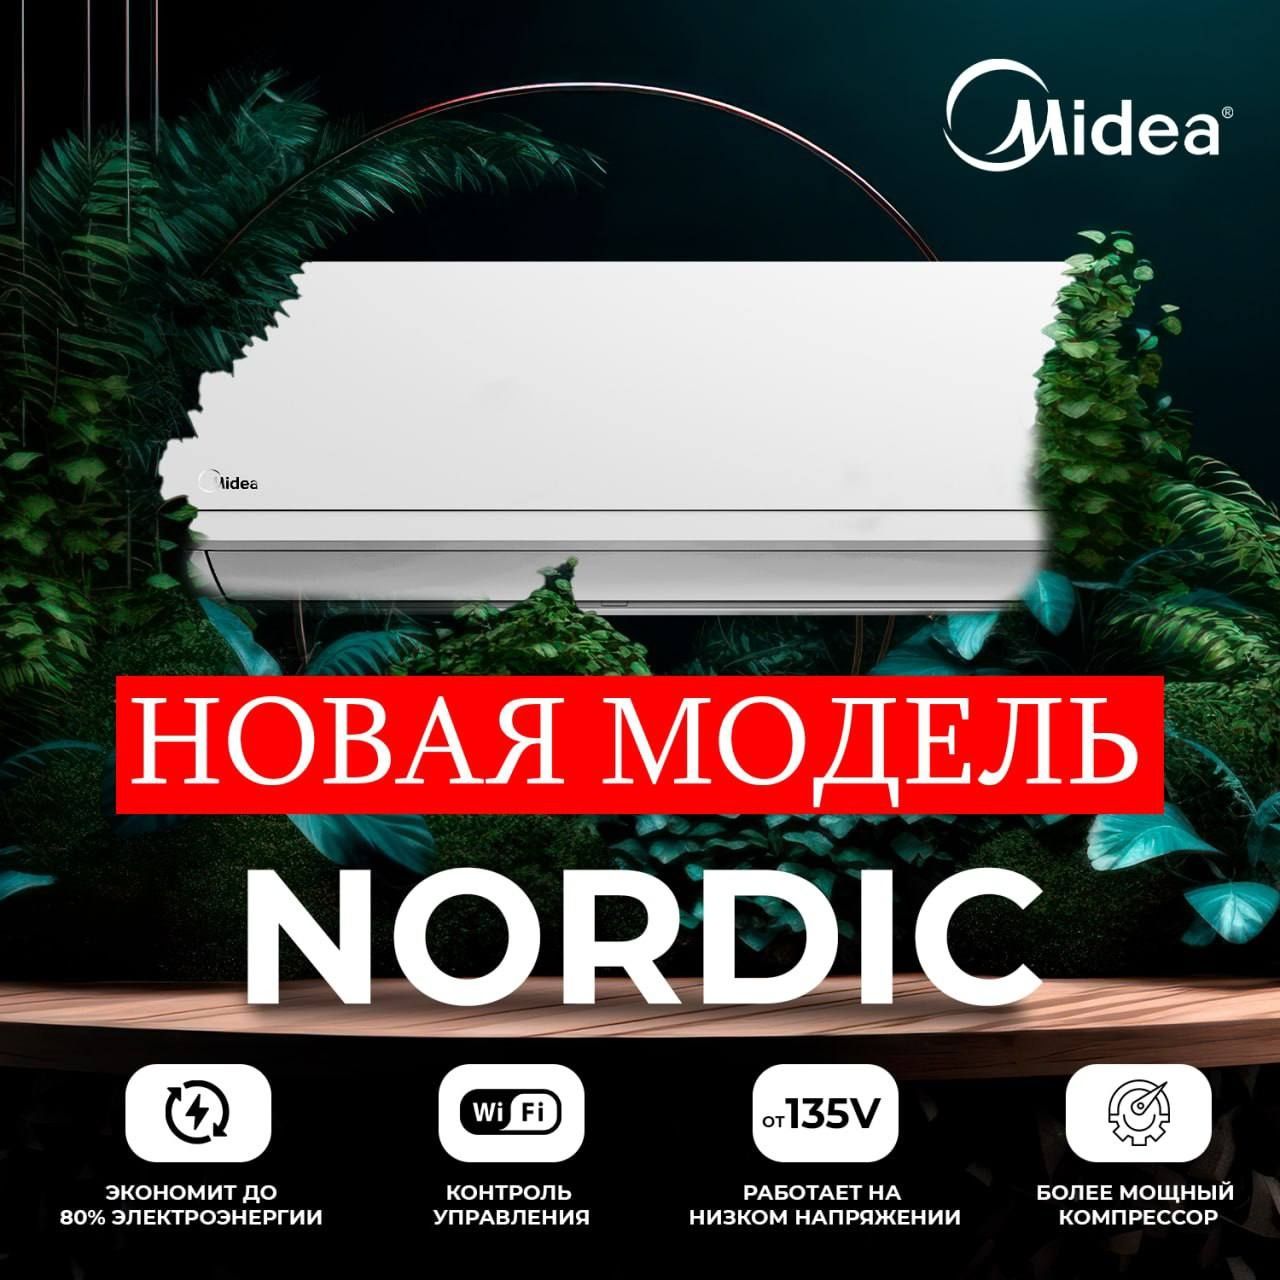 Кондиционер Midea Nordic 12 inverter